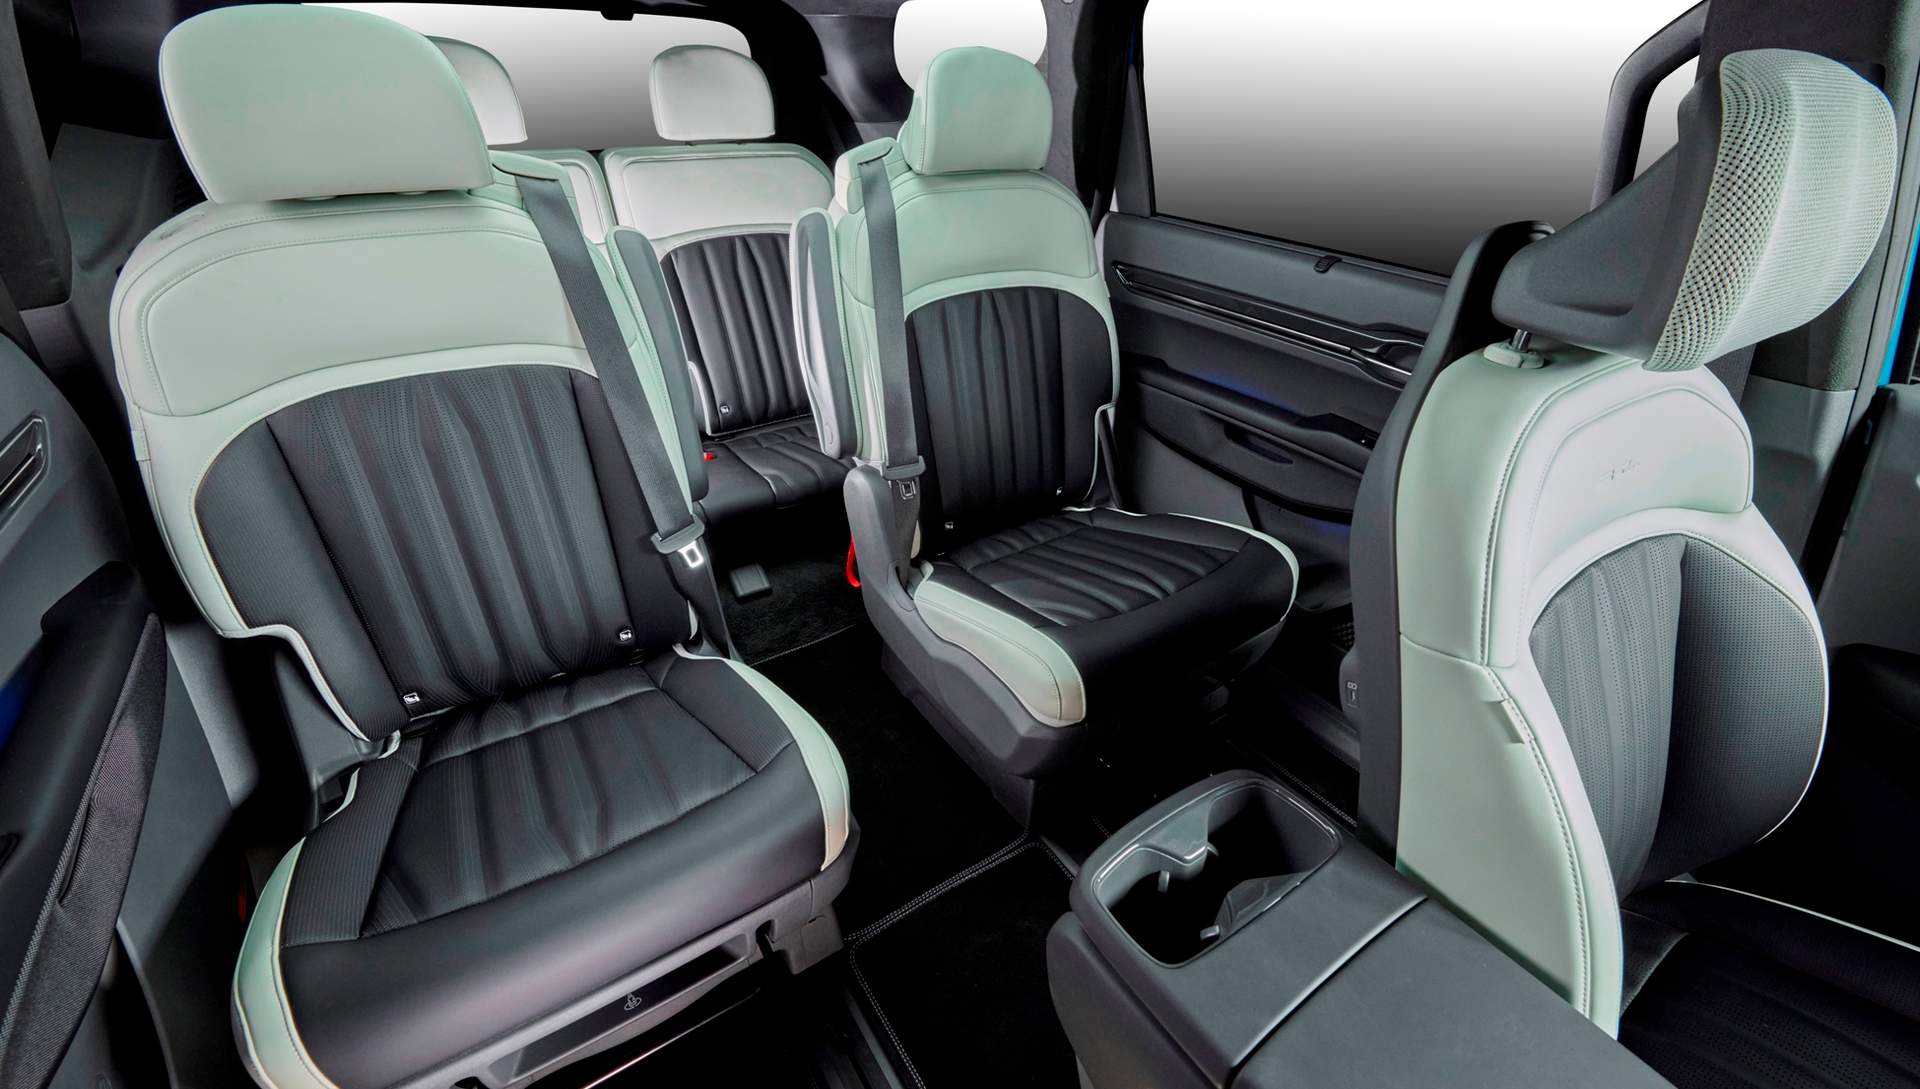 La versión de 6 plazas equipa asientos tipo Relax en la primera y segunda fila. Estos asientos son calefactables, van ventilados e incluyen reposapiés extensible.